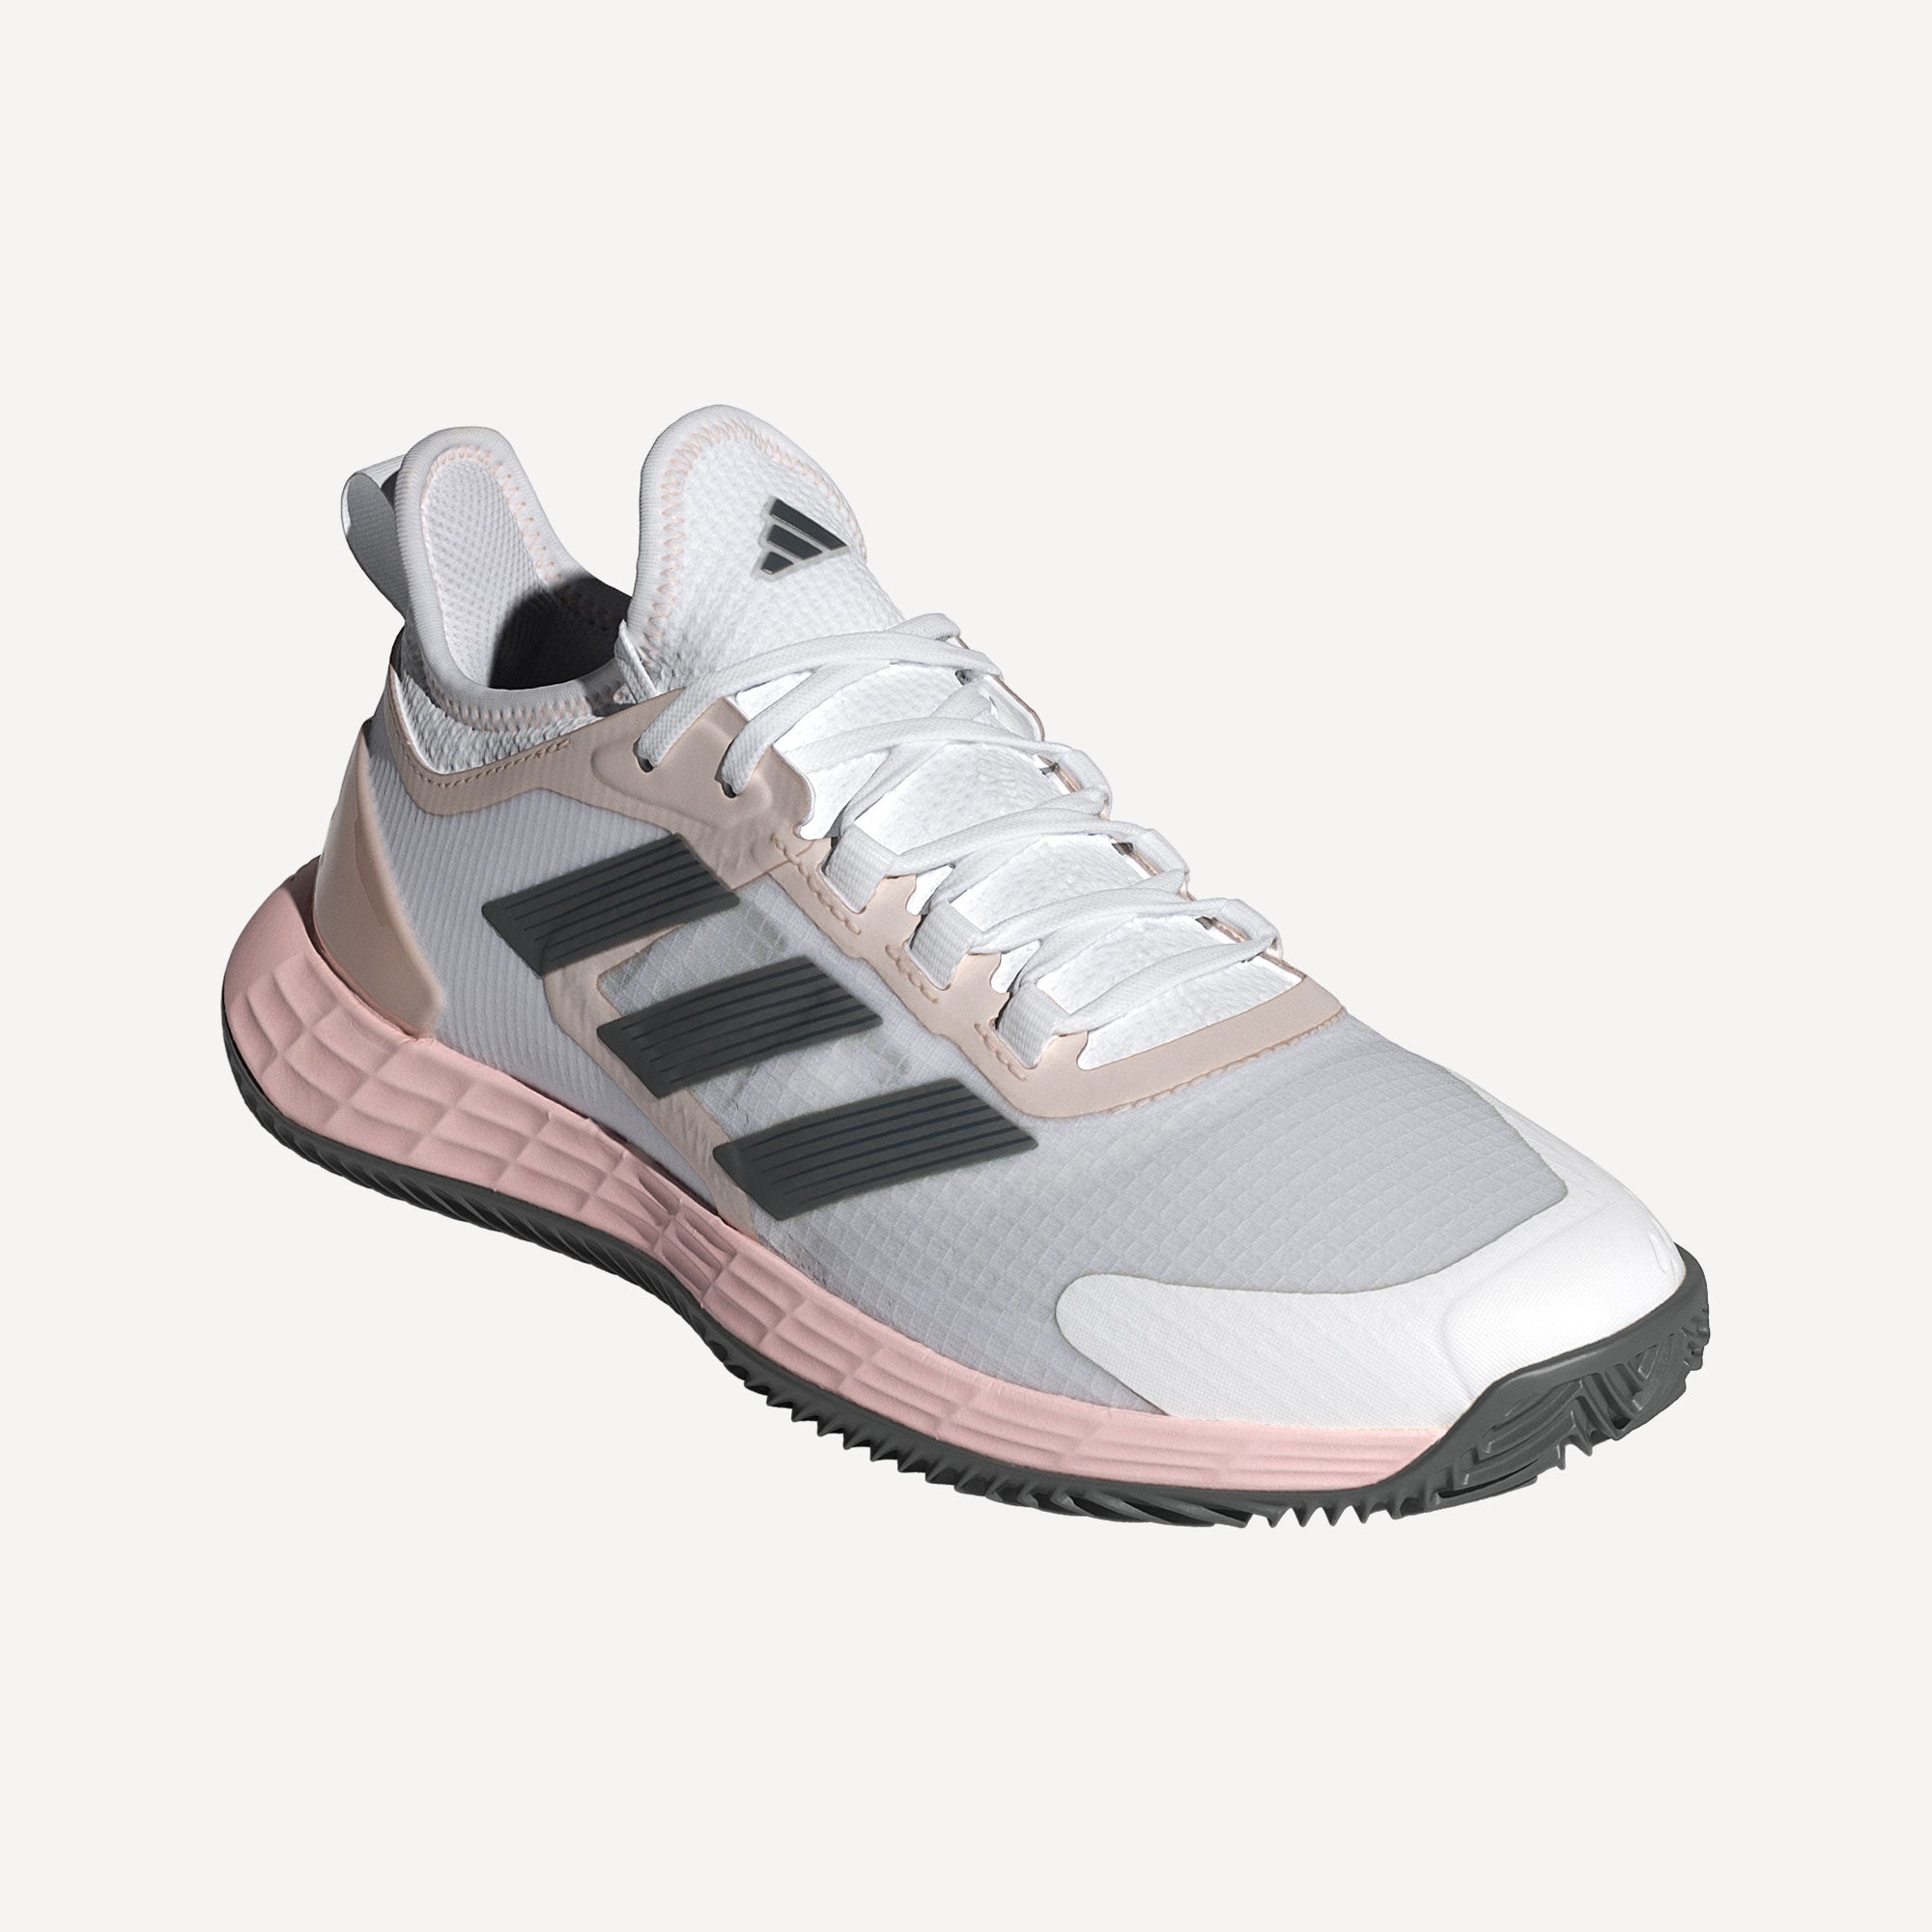 adidas AdiZero Ubersonic 4.1 Women's Clay Court Tennis Shoes - White (5)